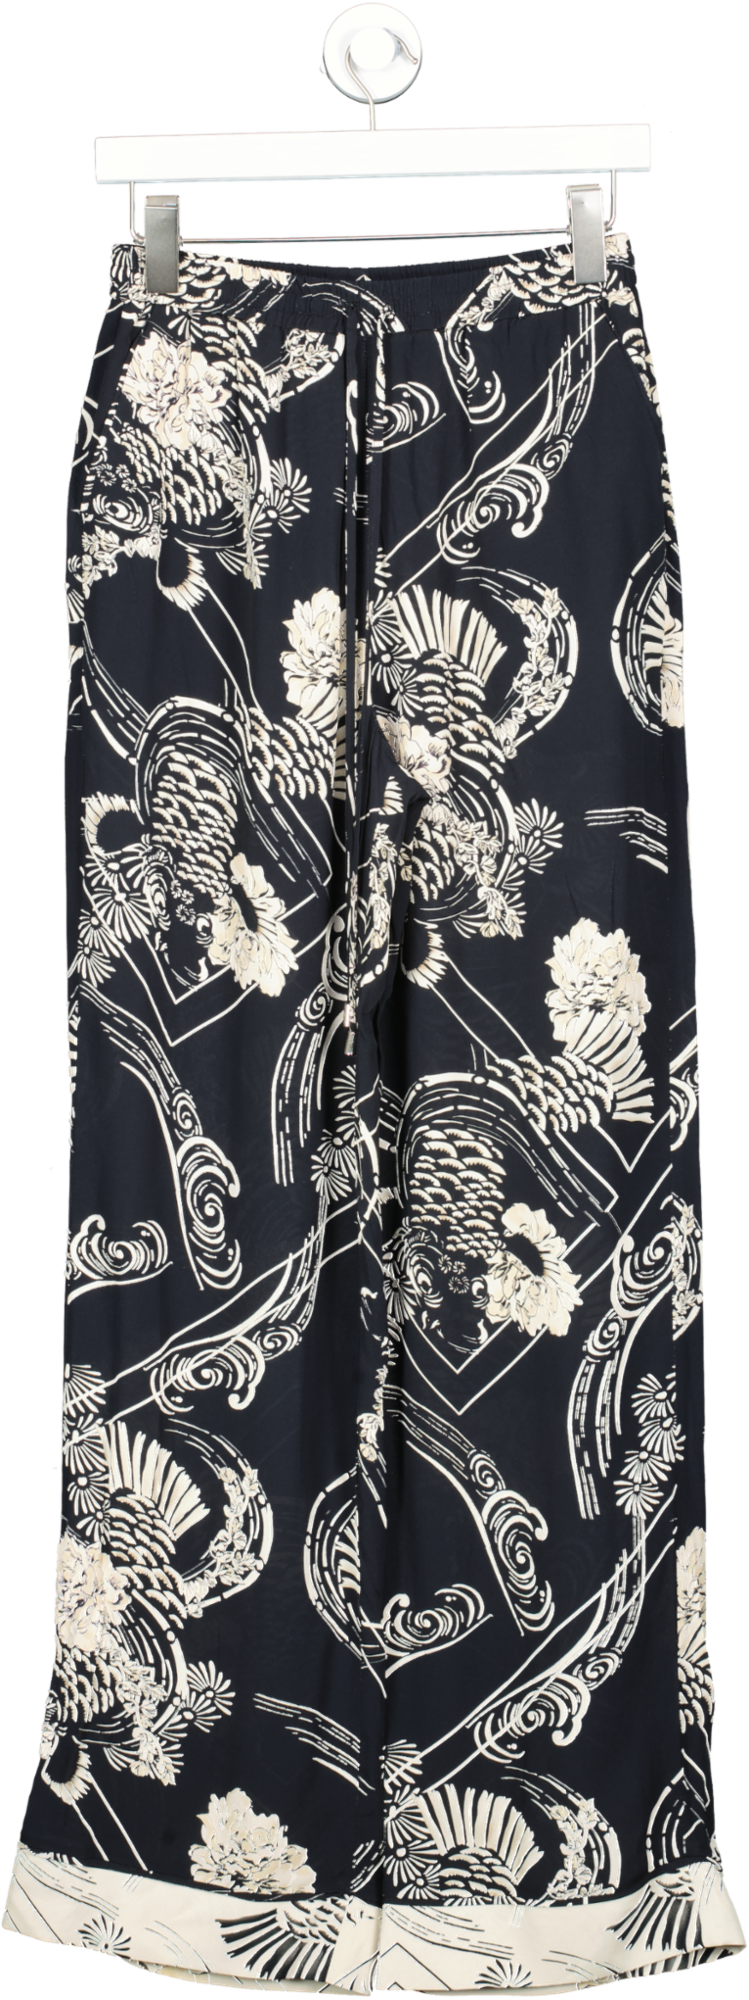 Karen Millen Black The Founder Koi Printed Woven Trousers UK 6